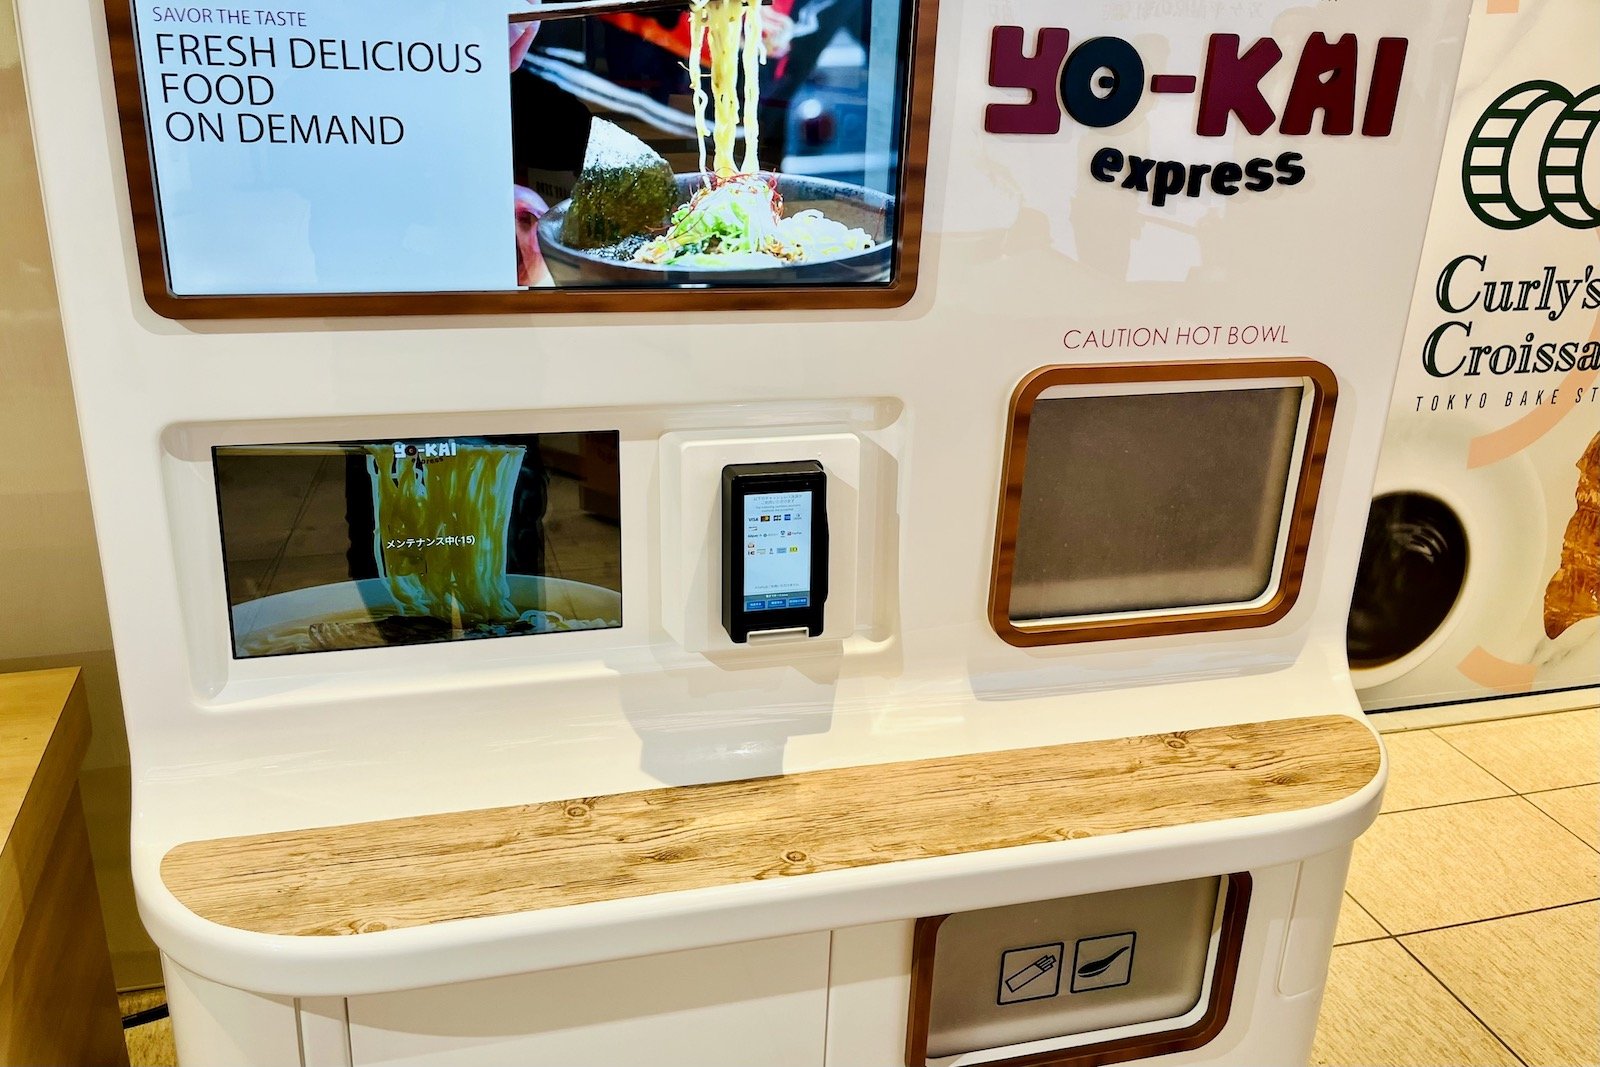 米国発ラーメン自動調理自販機「Yo-kai Express」が日本展開を本格化、2022年中に250台を設置へ